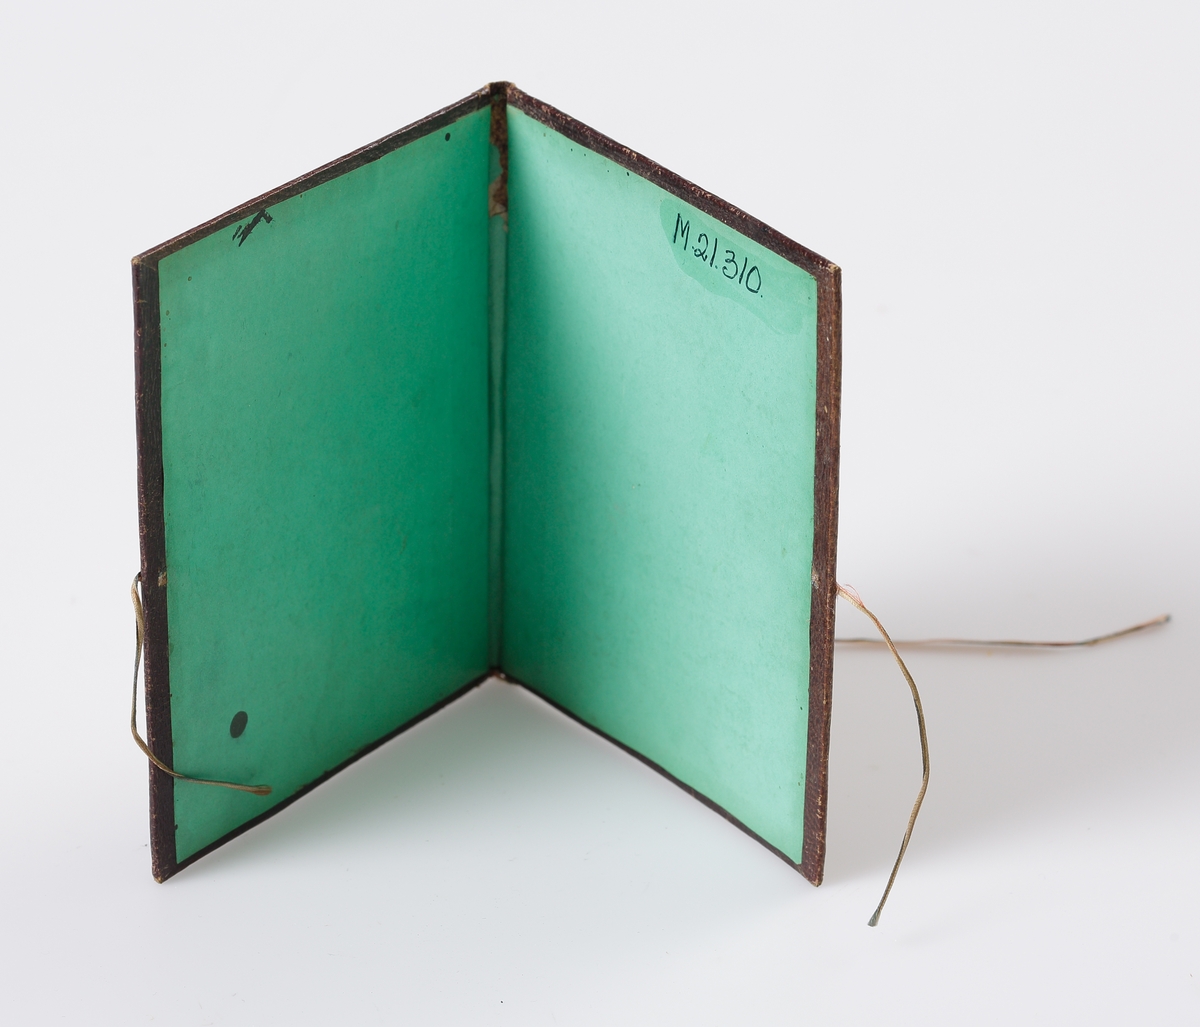 Pärm med pärlbroderi i brunt och blått.
Broderad invändigt med initialer H L (Hedvig Lindgren). Klädd med grönt papper på insidan. 

Inskrivet i huvudbok 1969.